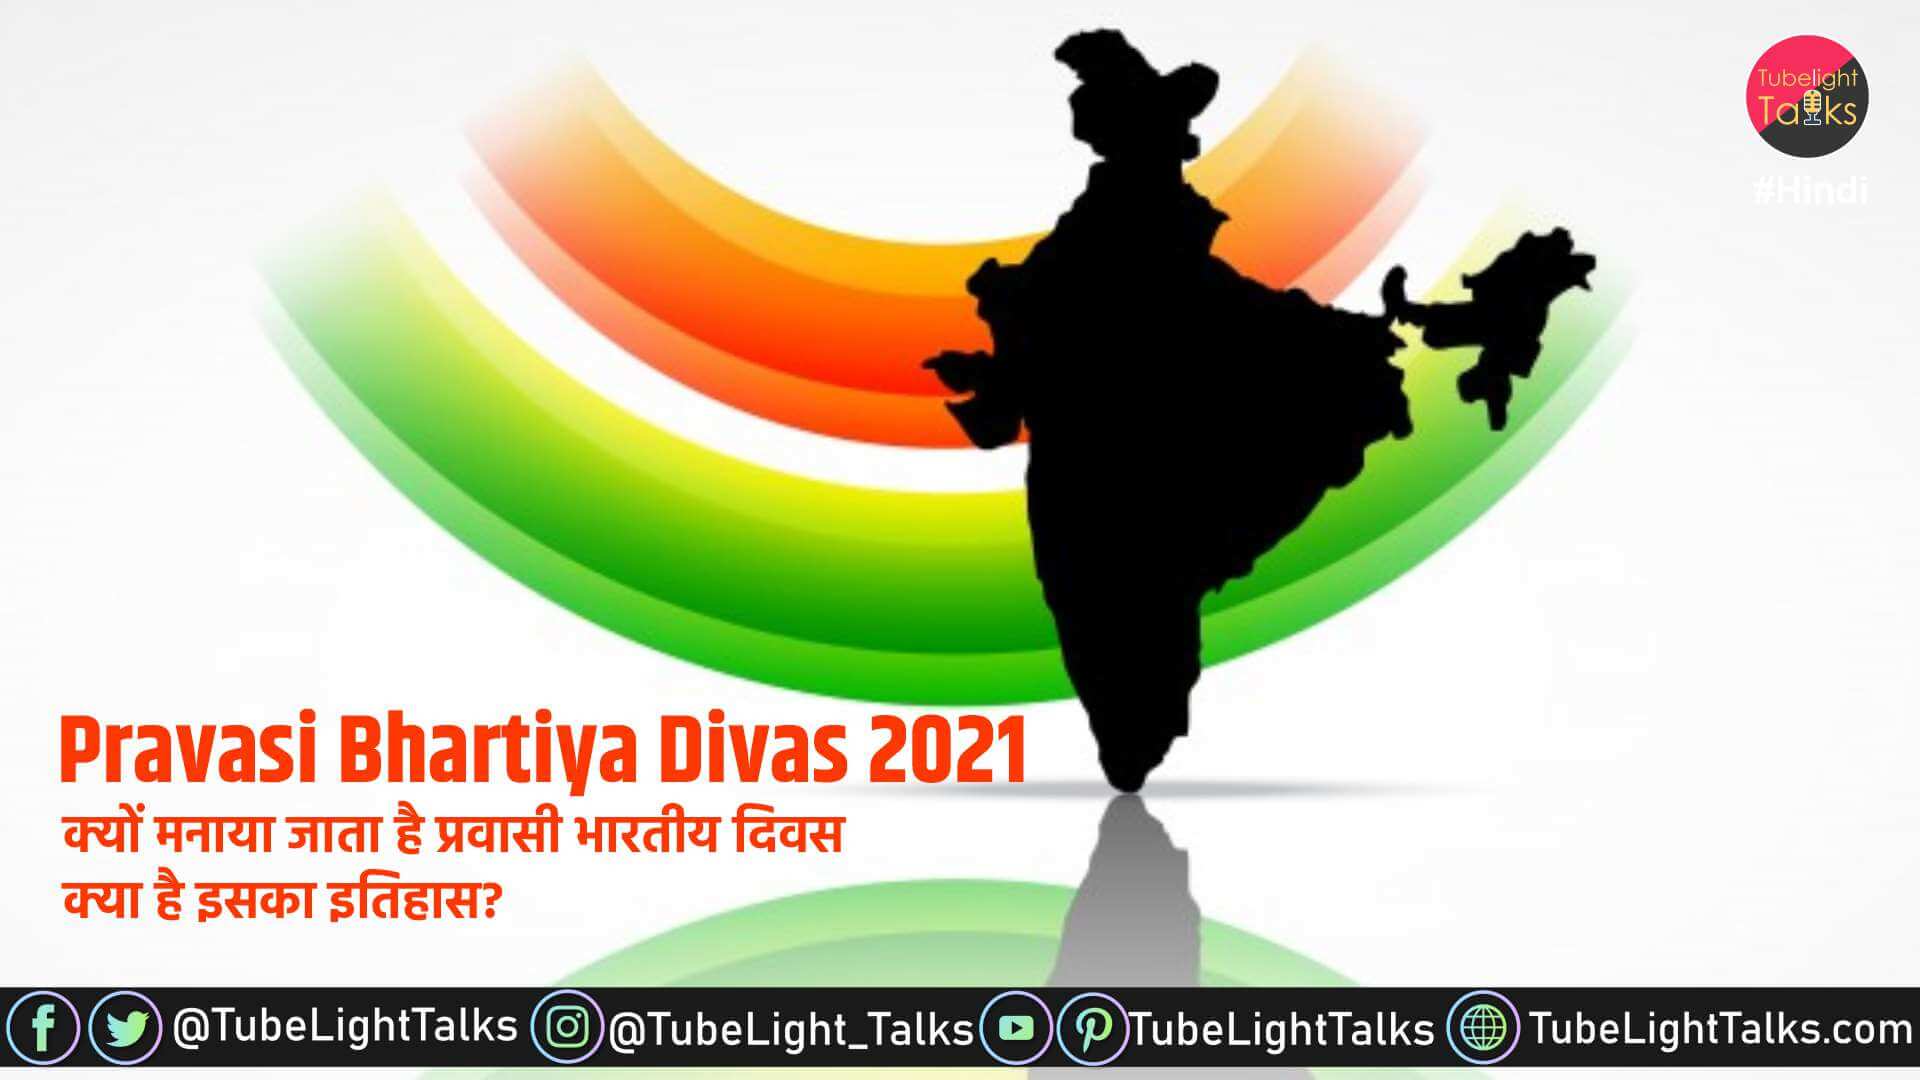 Pravasi-Bhartiya-Divas-2021-theme-pm-modi-image